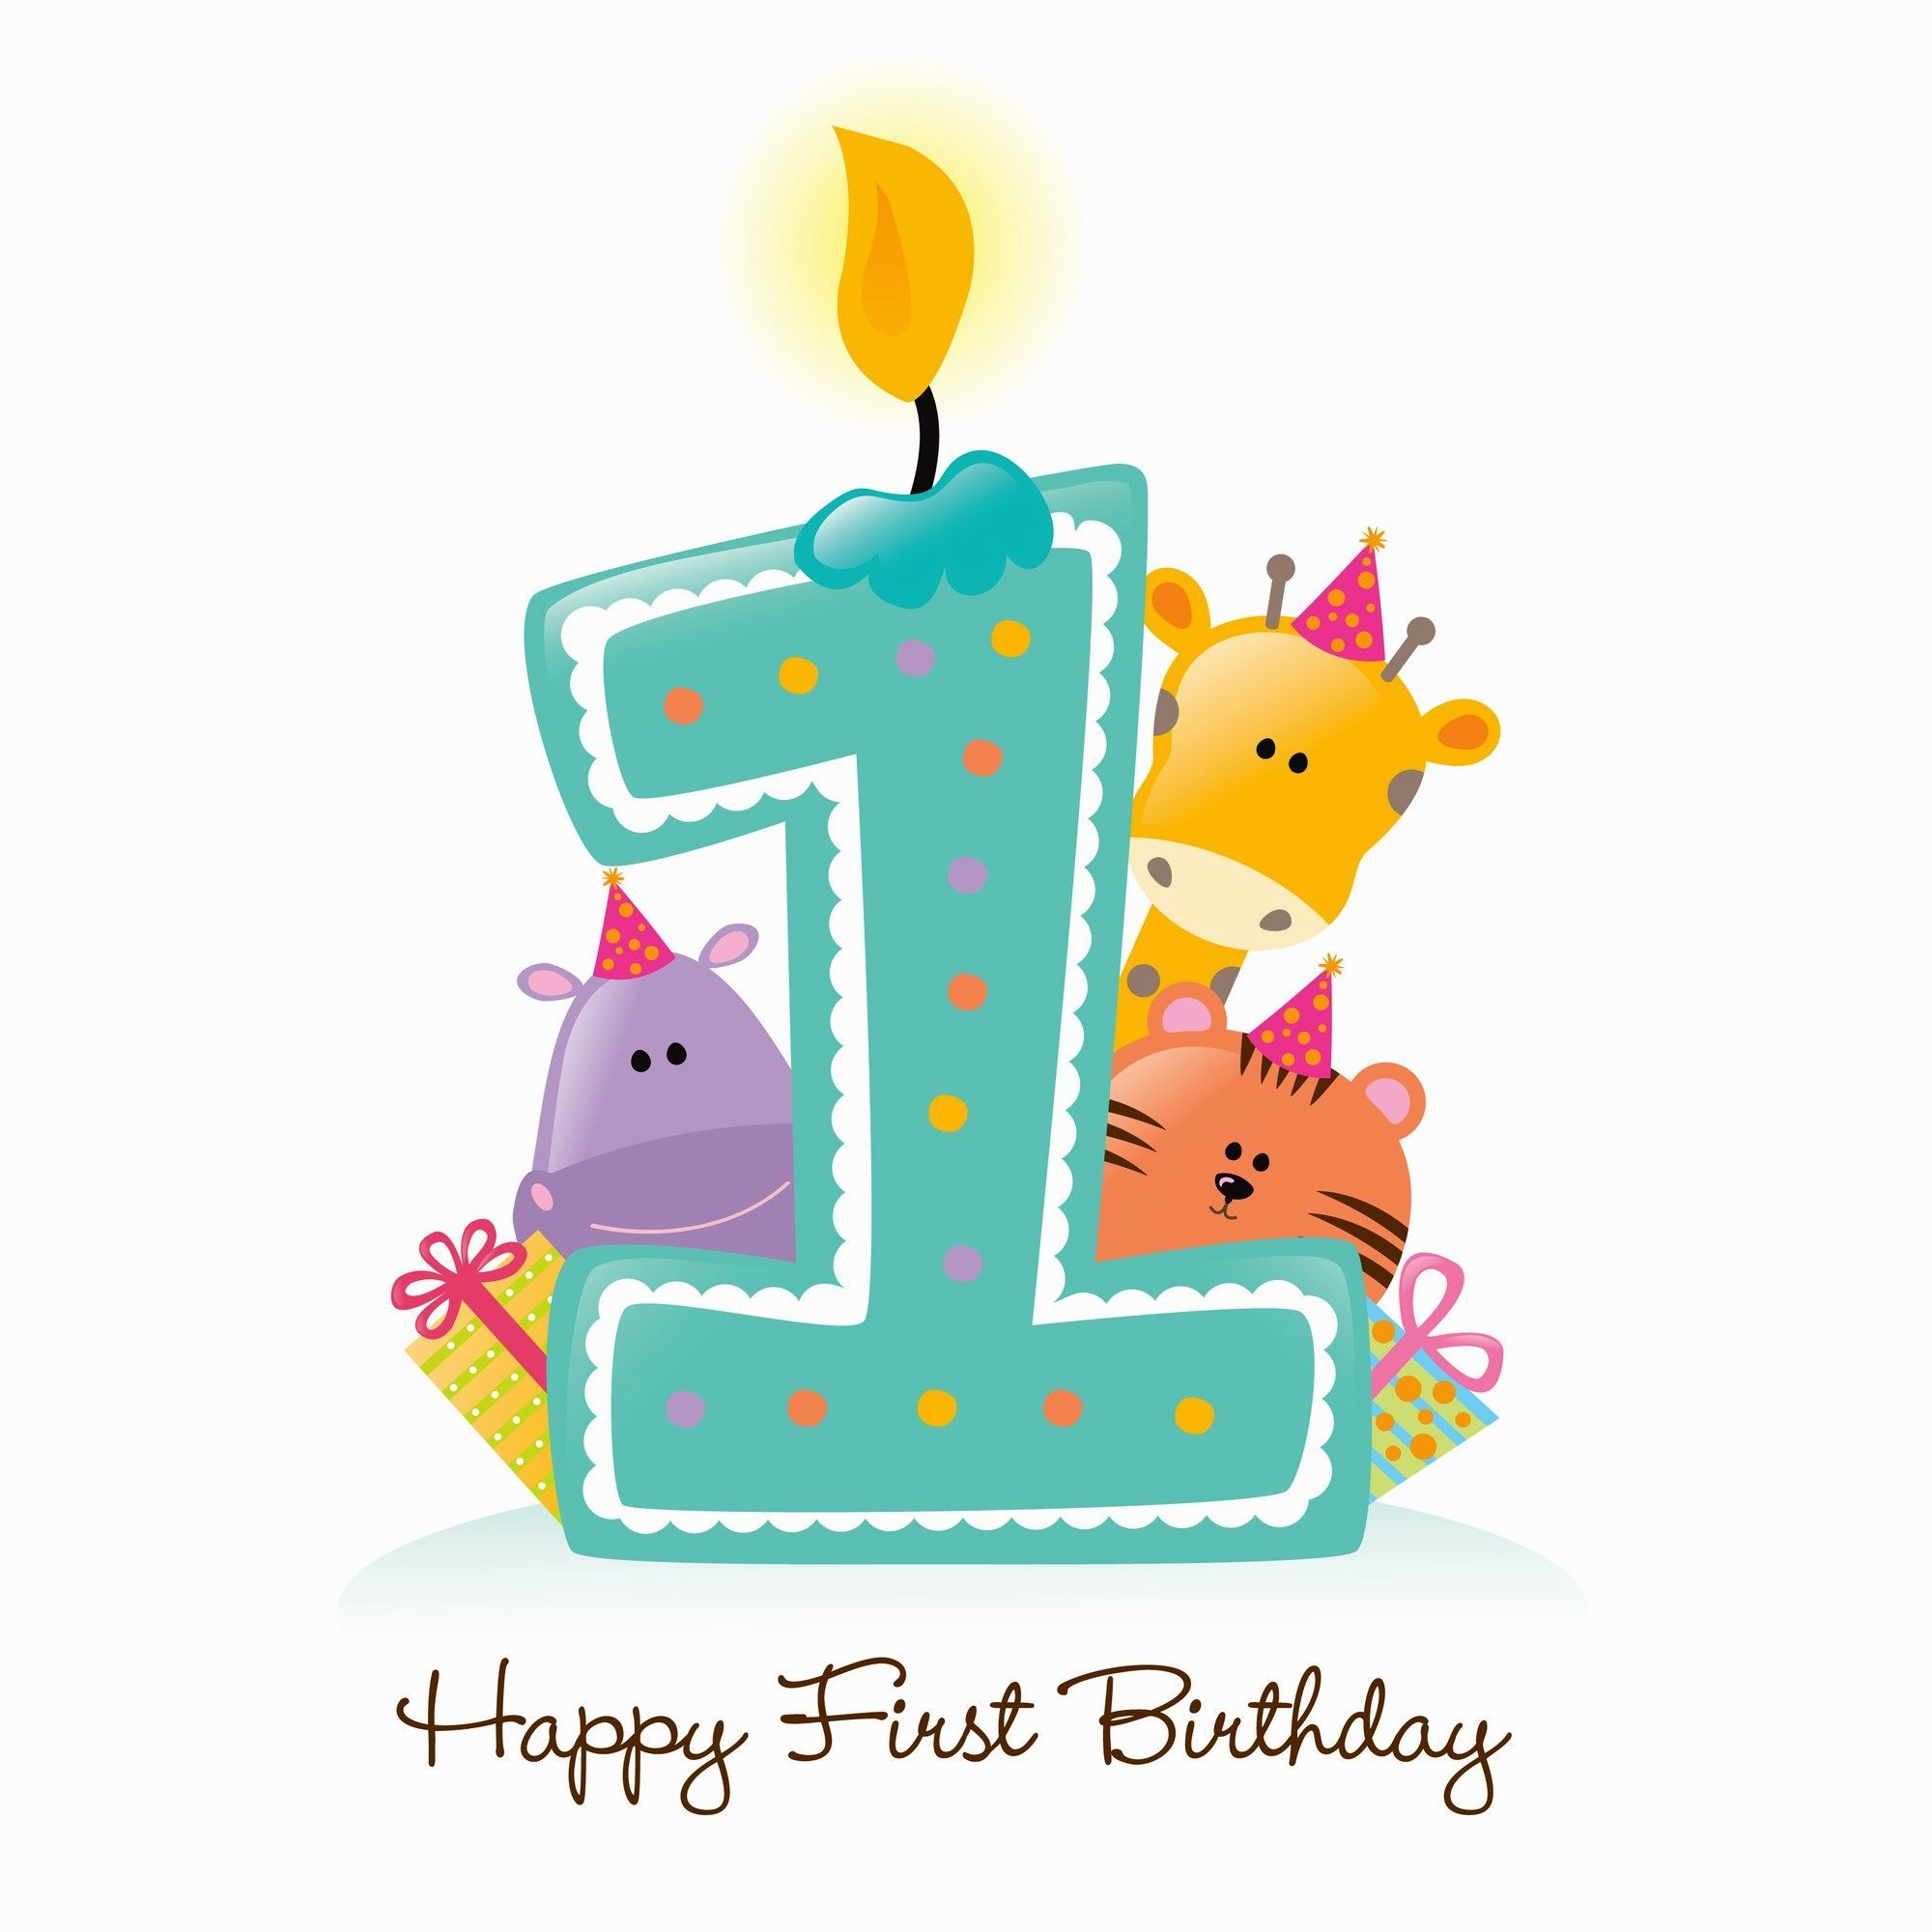 Happy first birthday | Happy first birthday, Happy 1st birthday wishes, Happy 1st birthdays